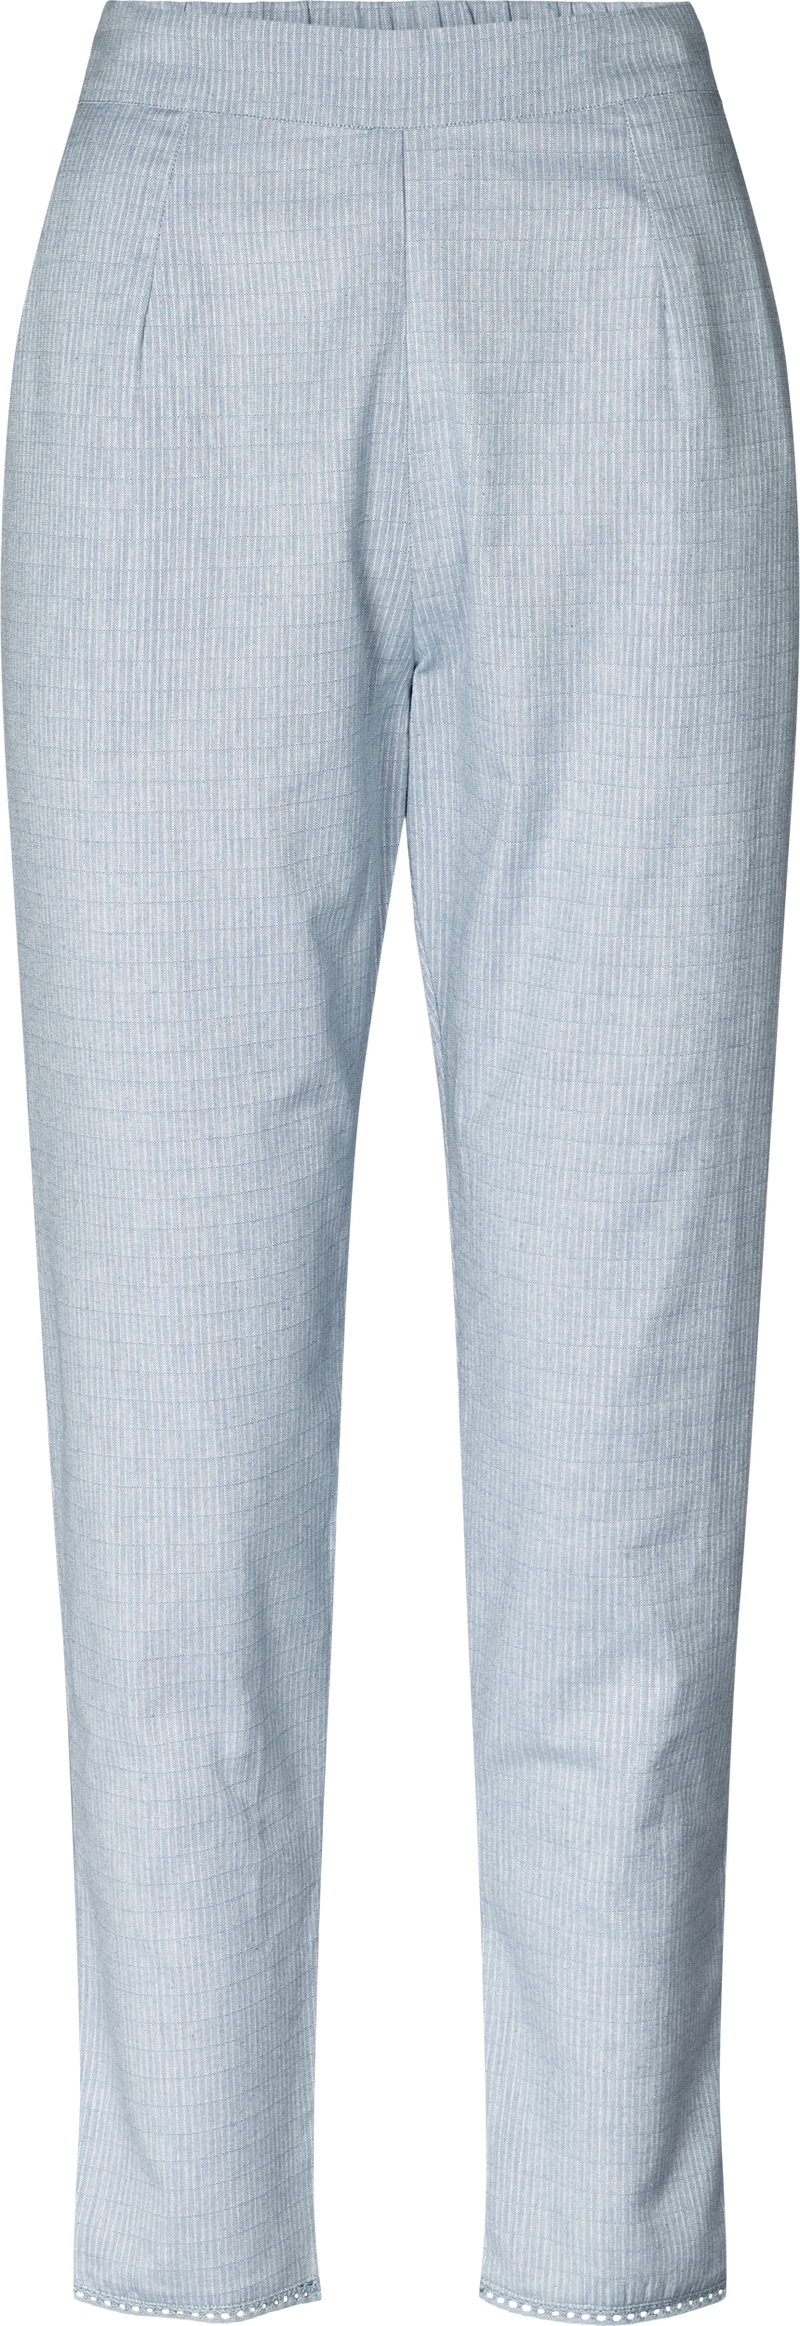 GAI+LISVA Margit Pant Cotton Texture Pants & Shorts 451 Dove Feather